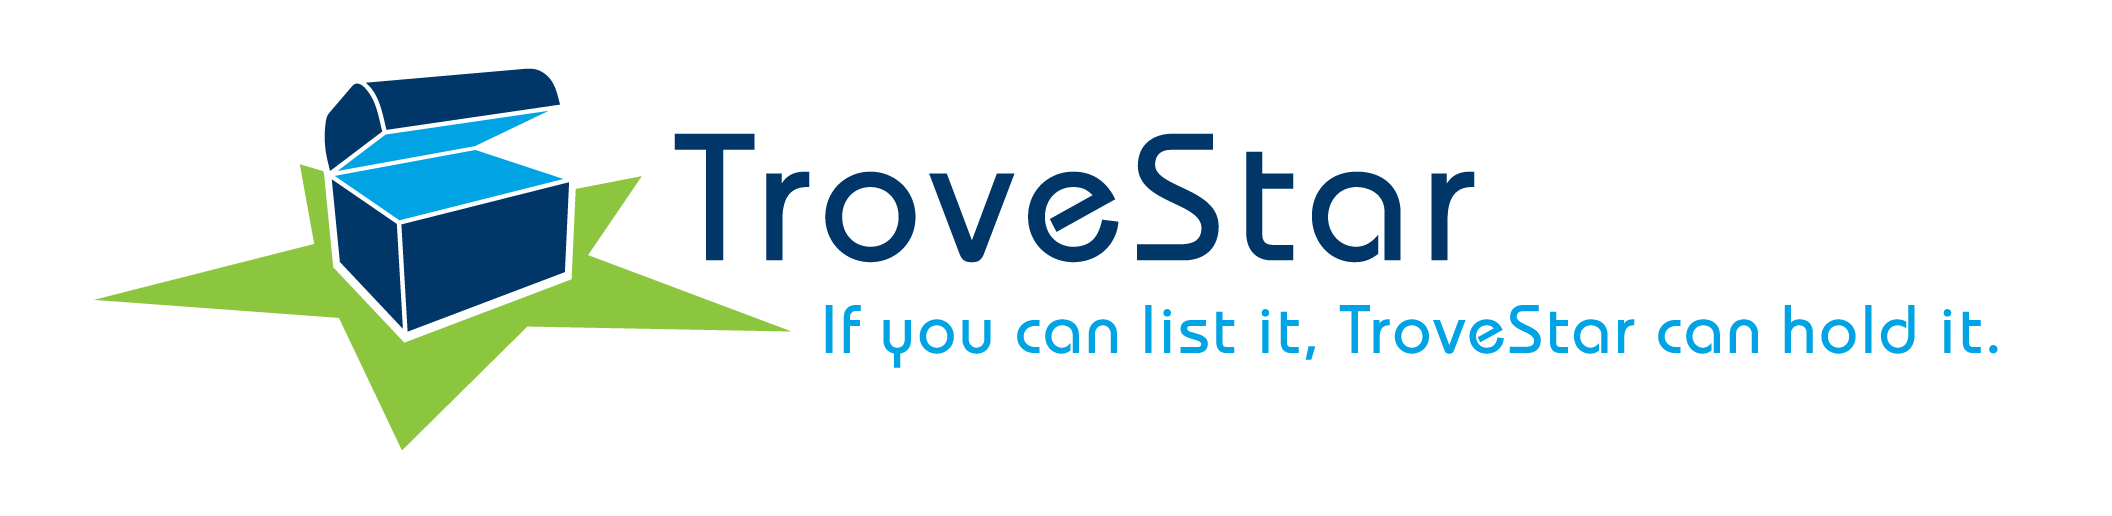 TroveStar logo